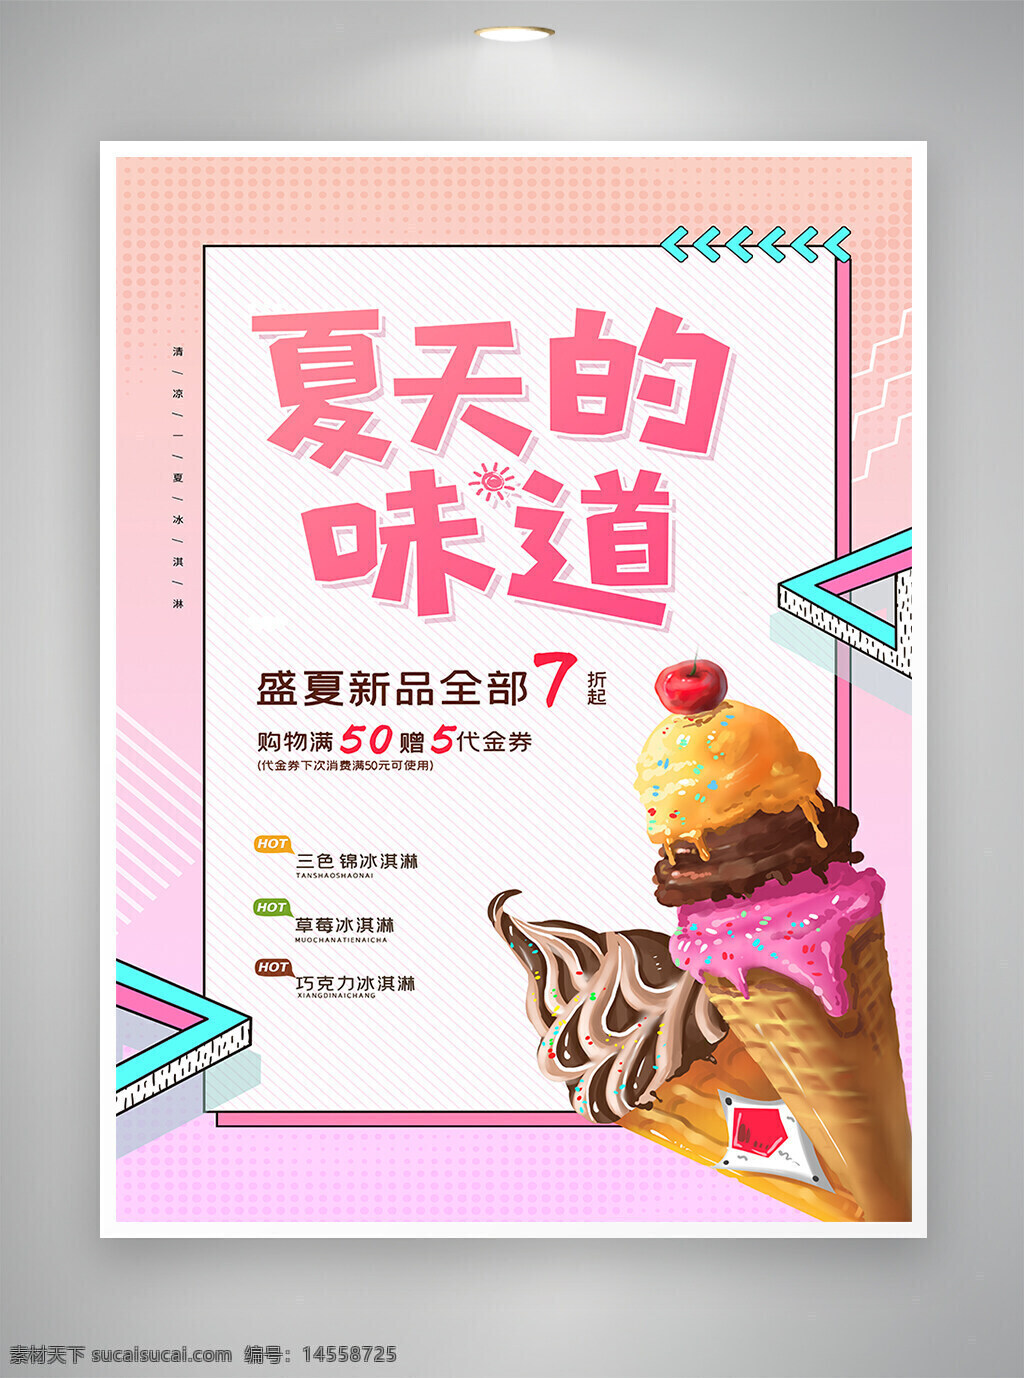 冰淇淋 冰淇淋海报 美食 美食海报 海报